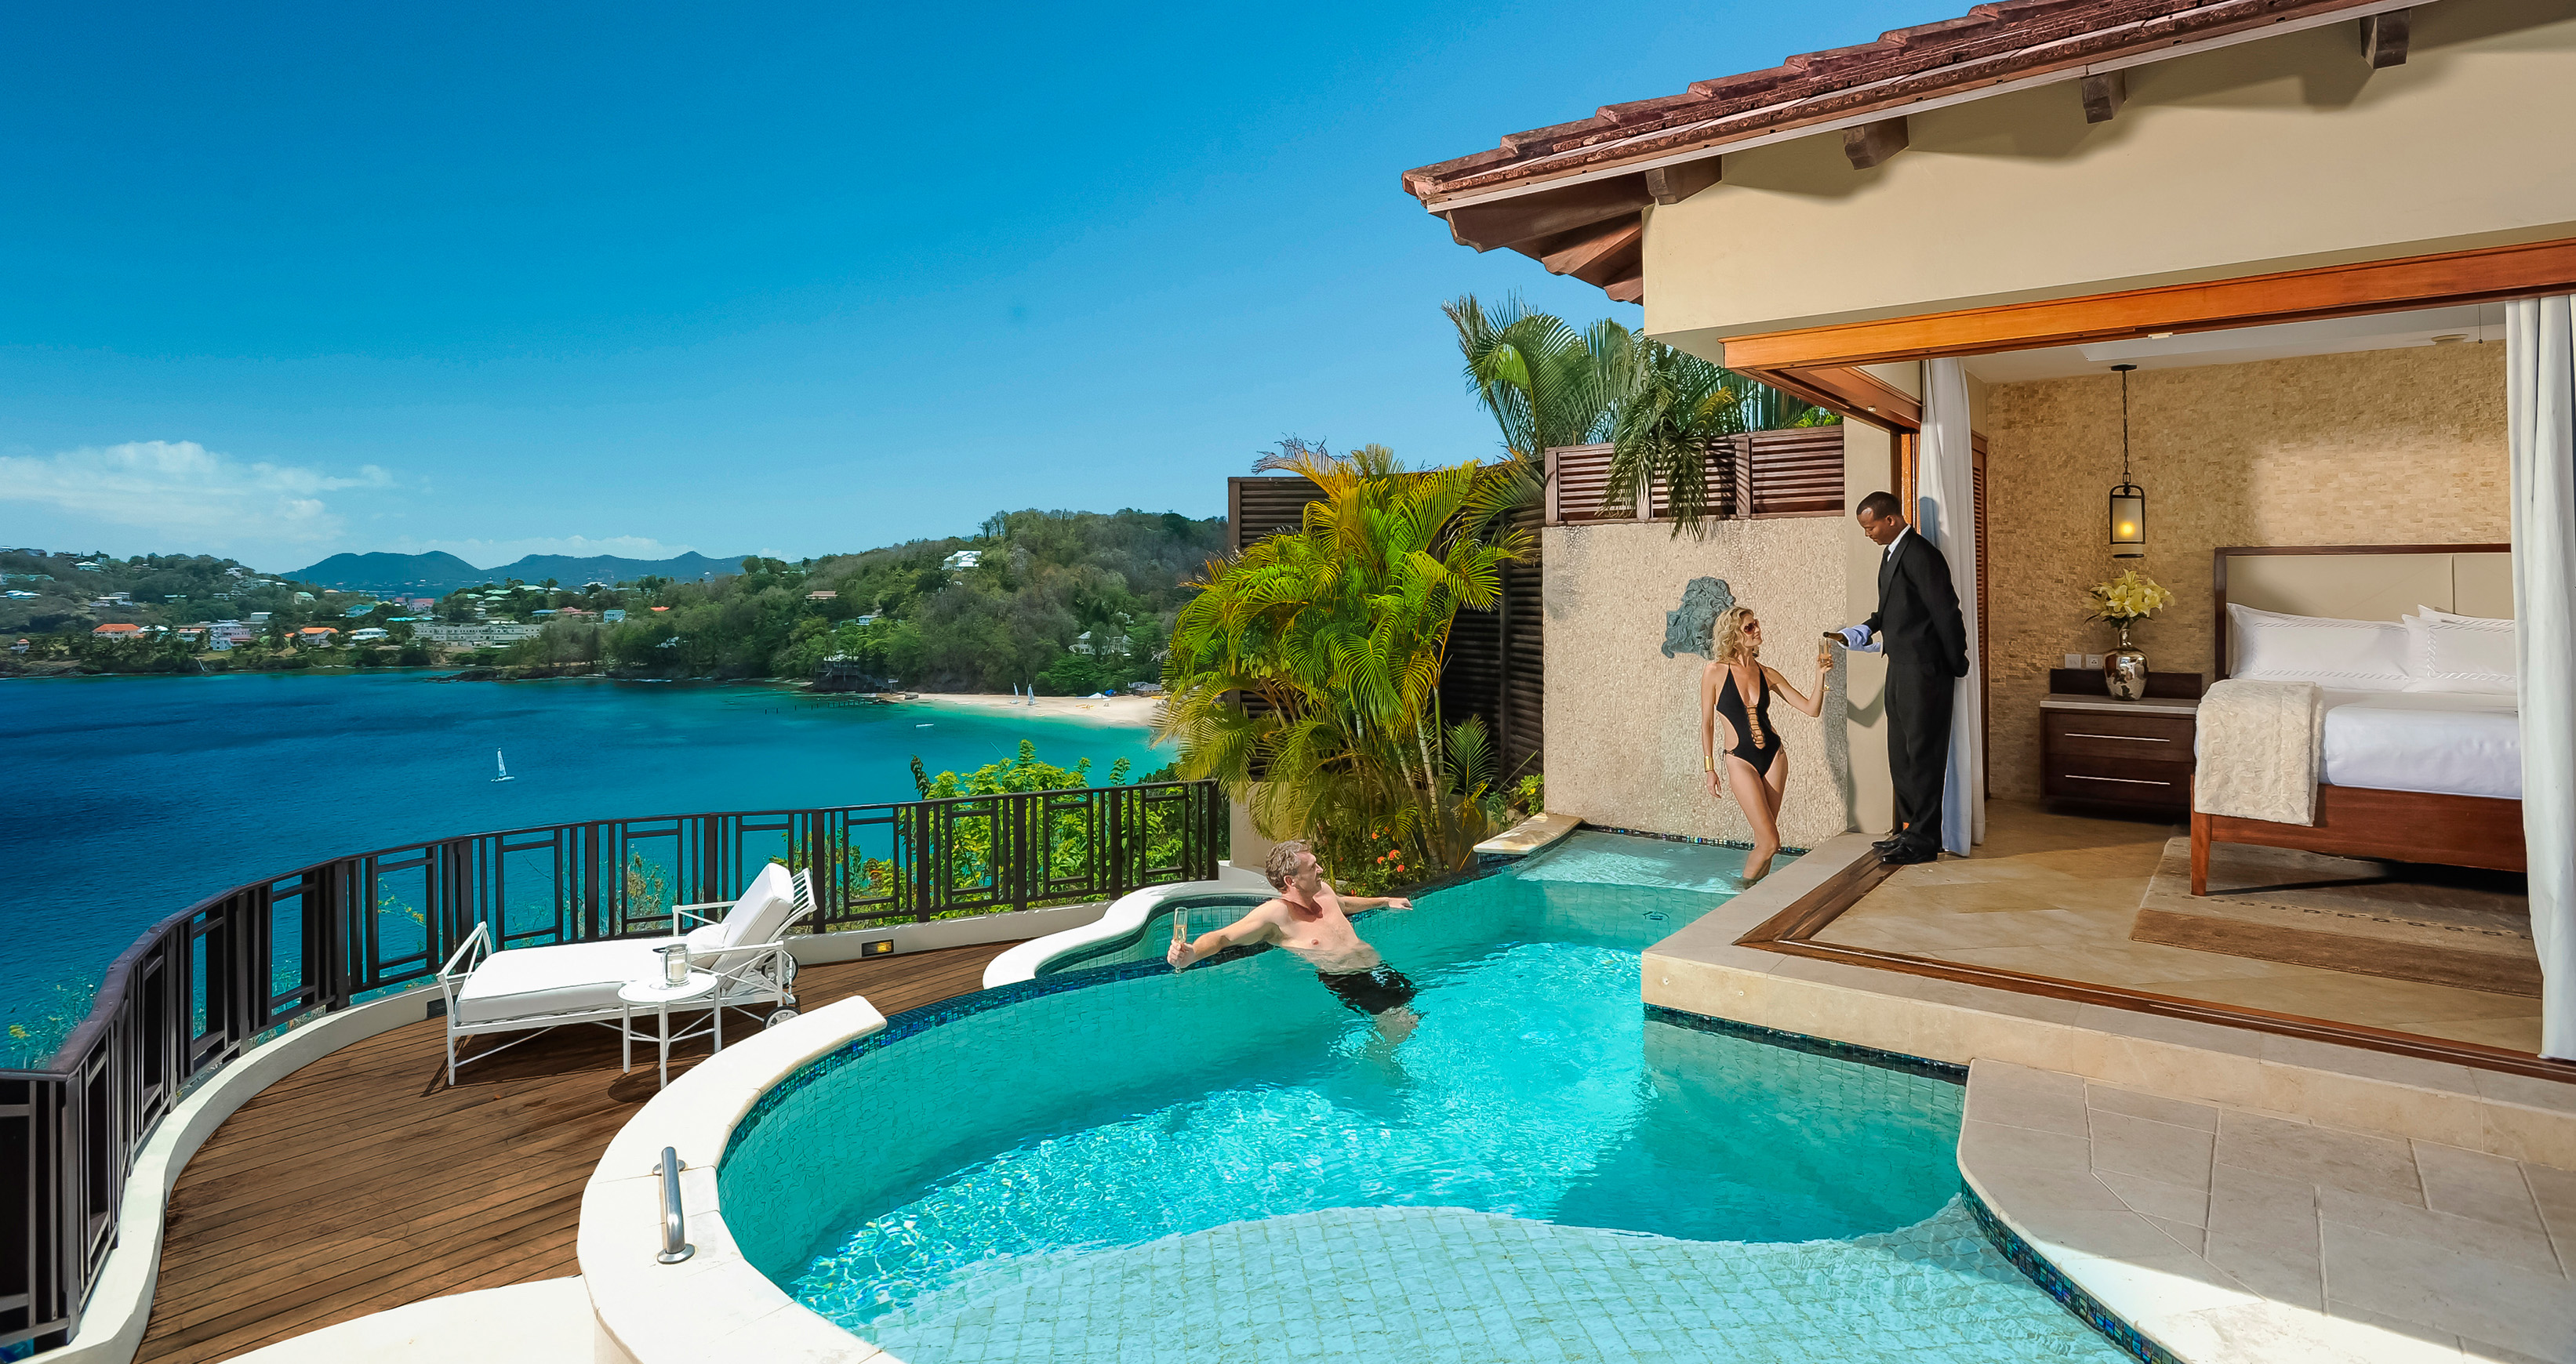 Best Sandals St. Lucia: Which Resort To Choose? | The Haphazard Traveler